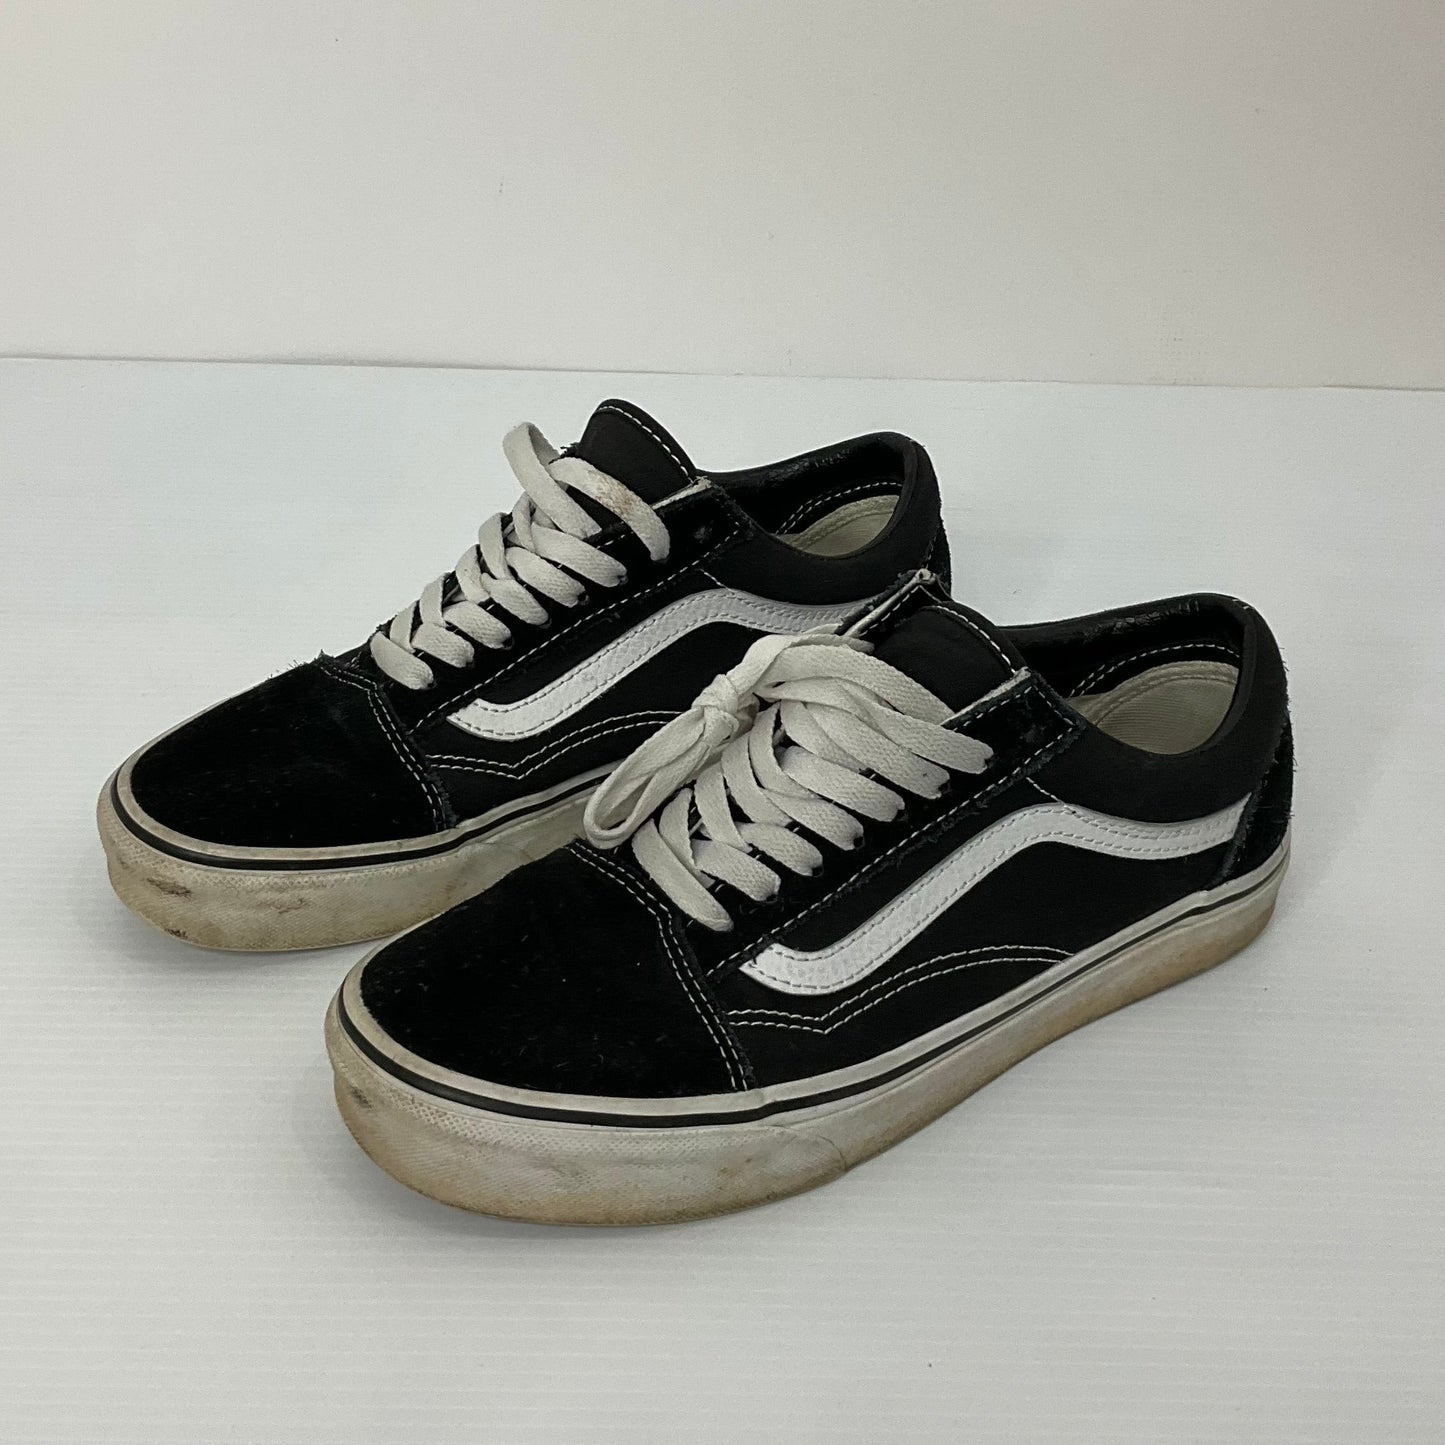 Black Shoes Sneakers Vans, Size 8.5